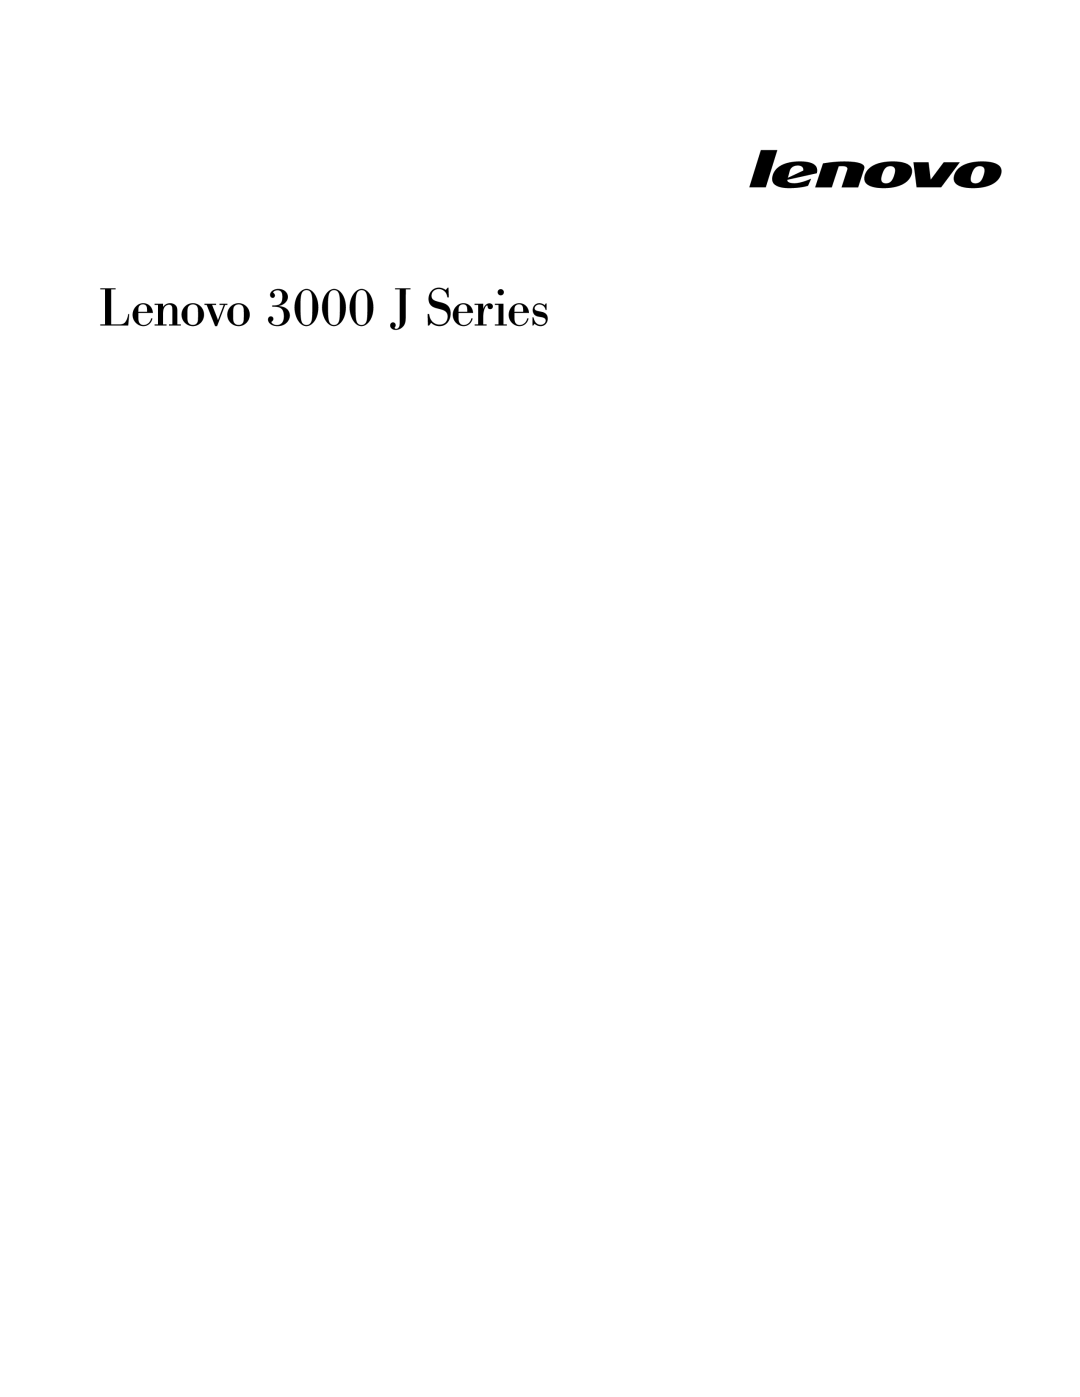 Lenovo 7398, 7397, 7392, 7391, 7396, 7390 manual Lenovo 3000 J Series 